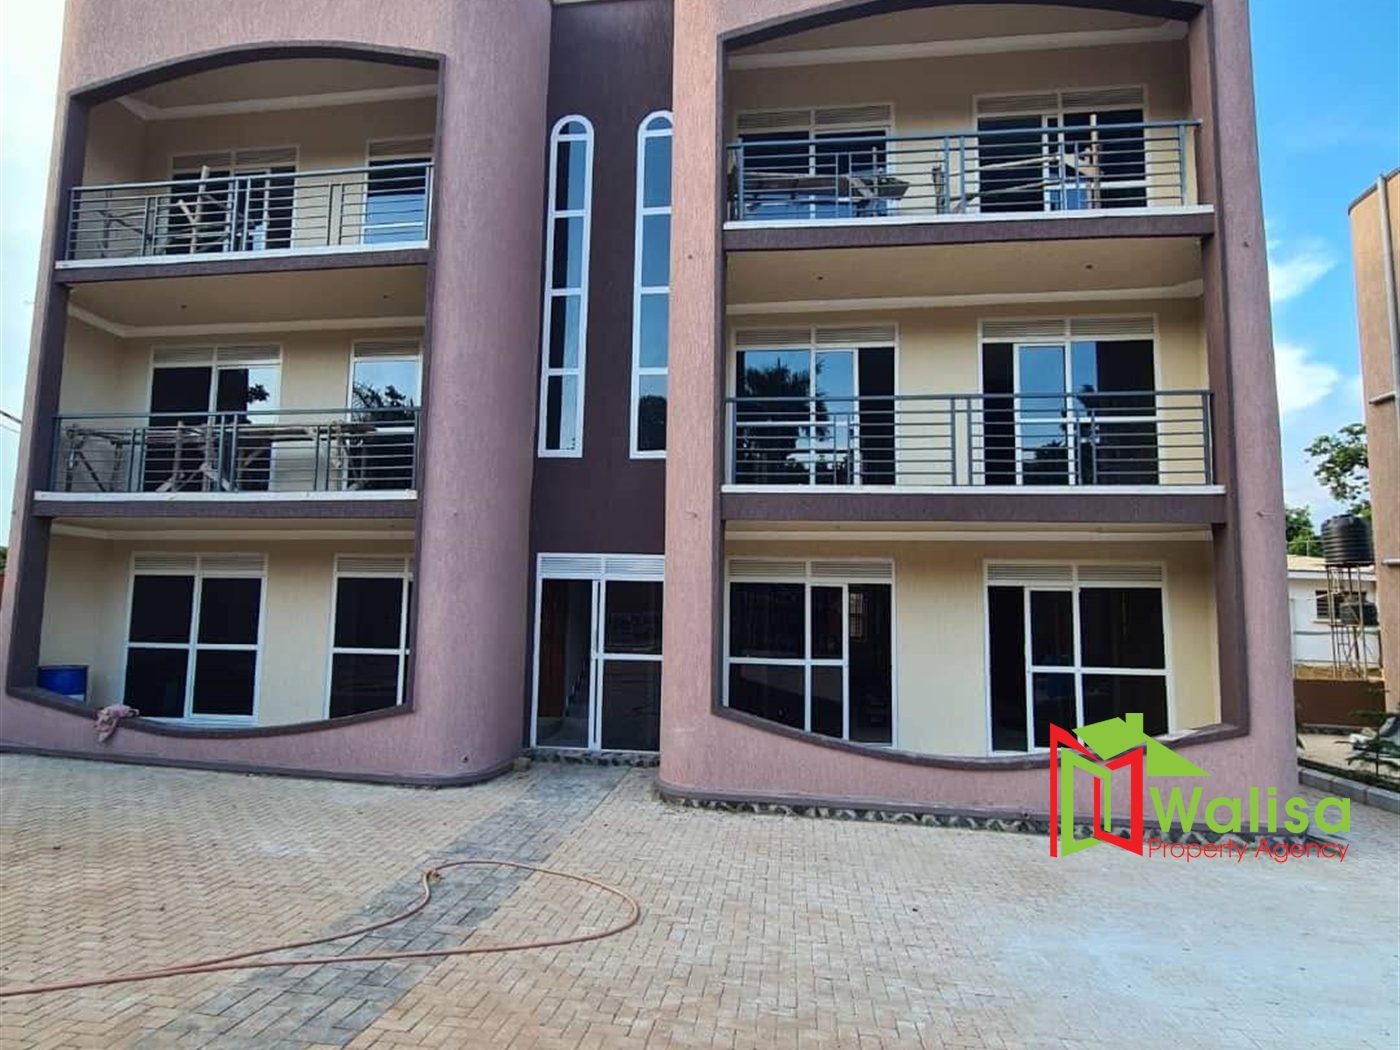 Apartment block for sale in Miyenga Kampala